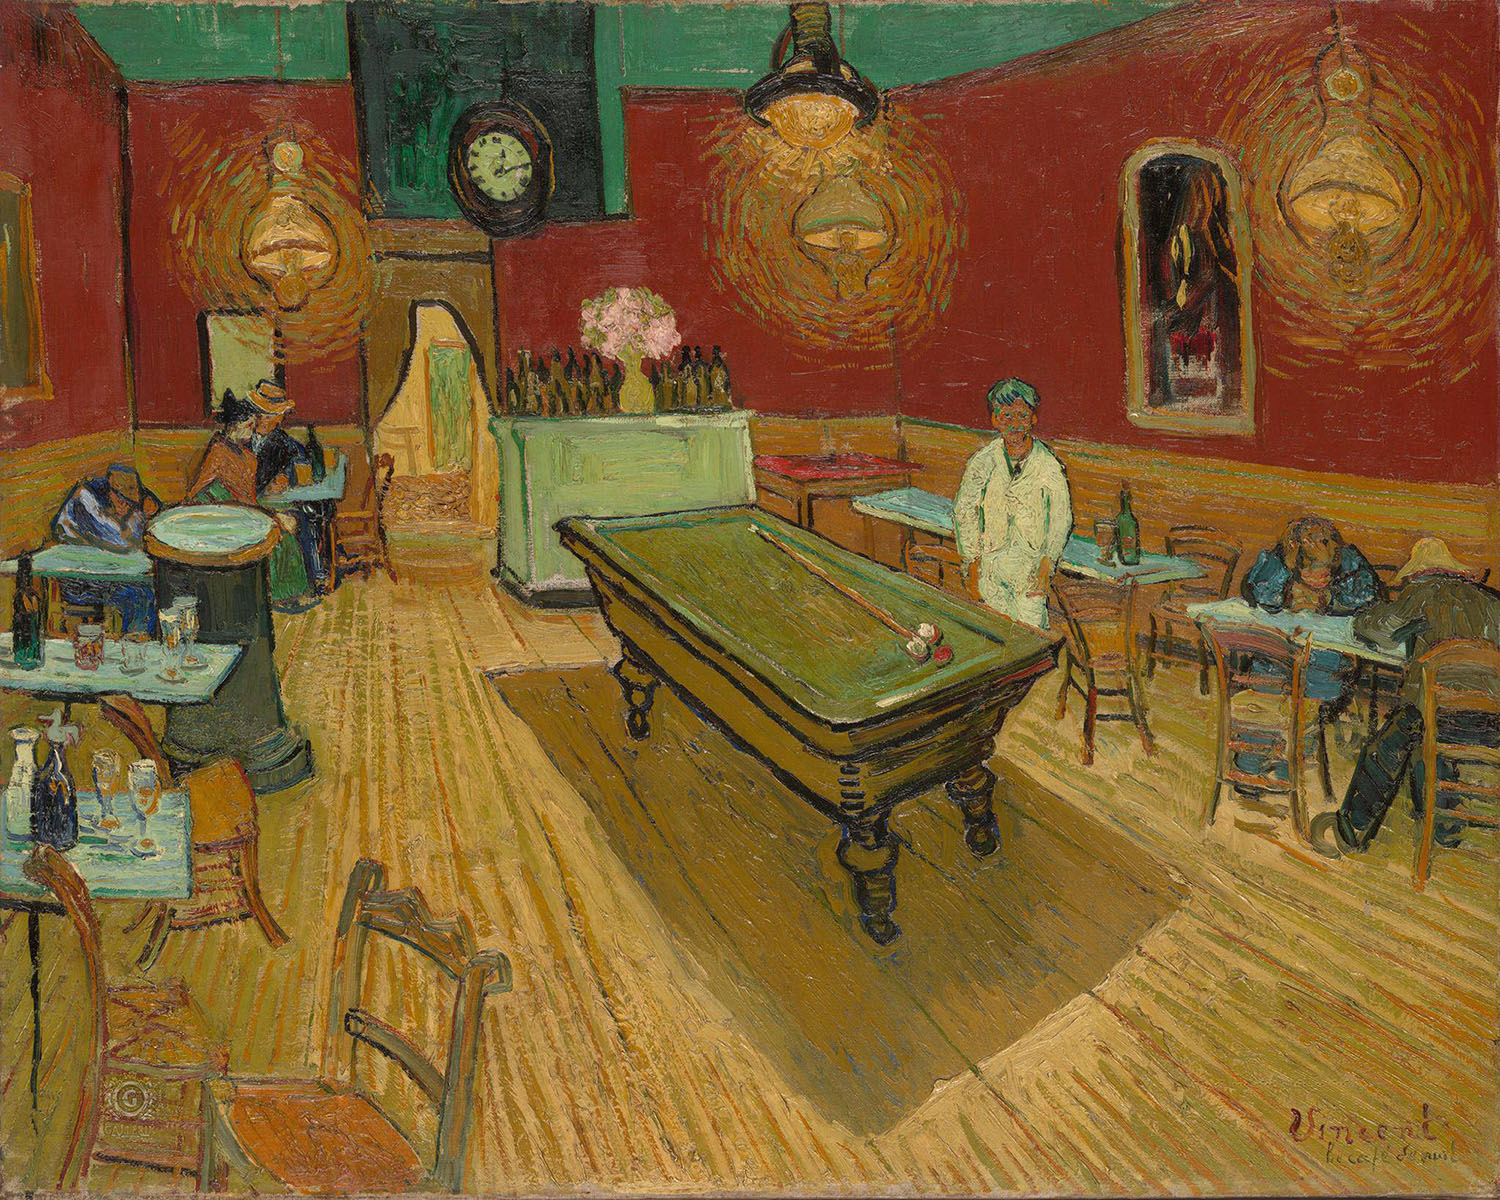 Винсент Ван Гог. "Ночное кафе". 1888. Художественная галерея Йельского университета, Нью-Хейвен